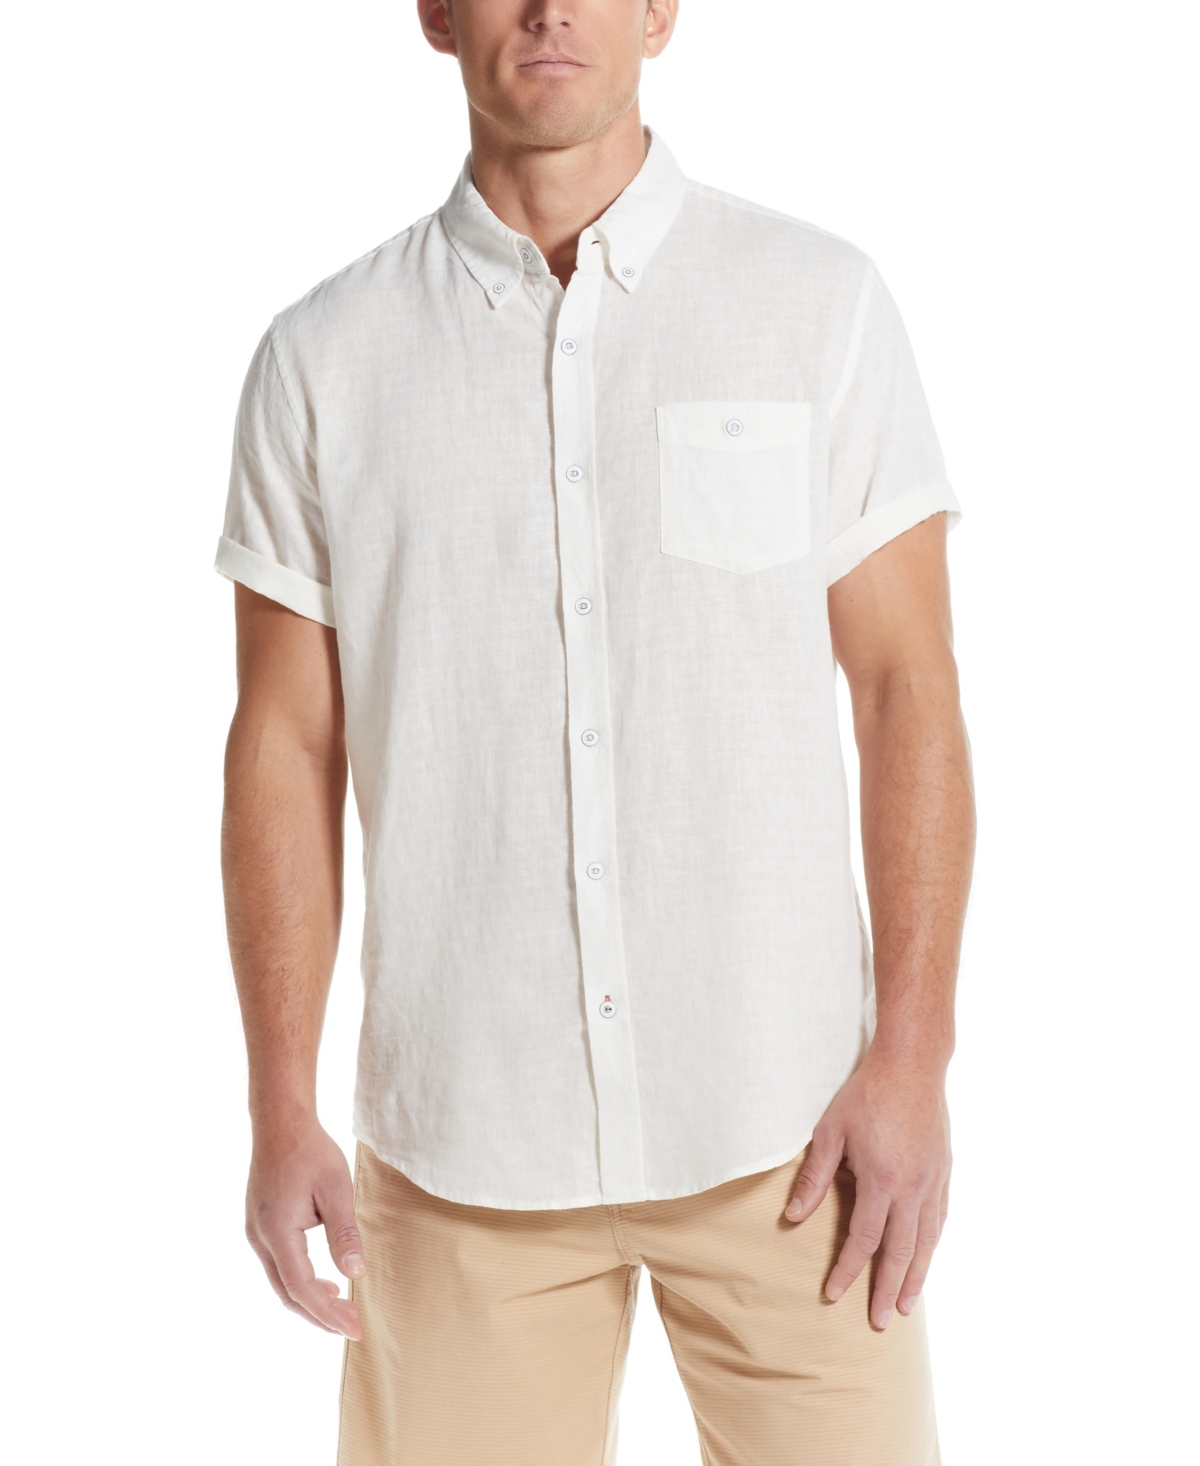 Men's Short Sleeve Solid Linen Cotton Shirt - Mint